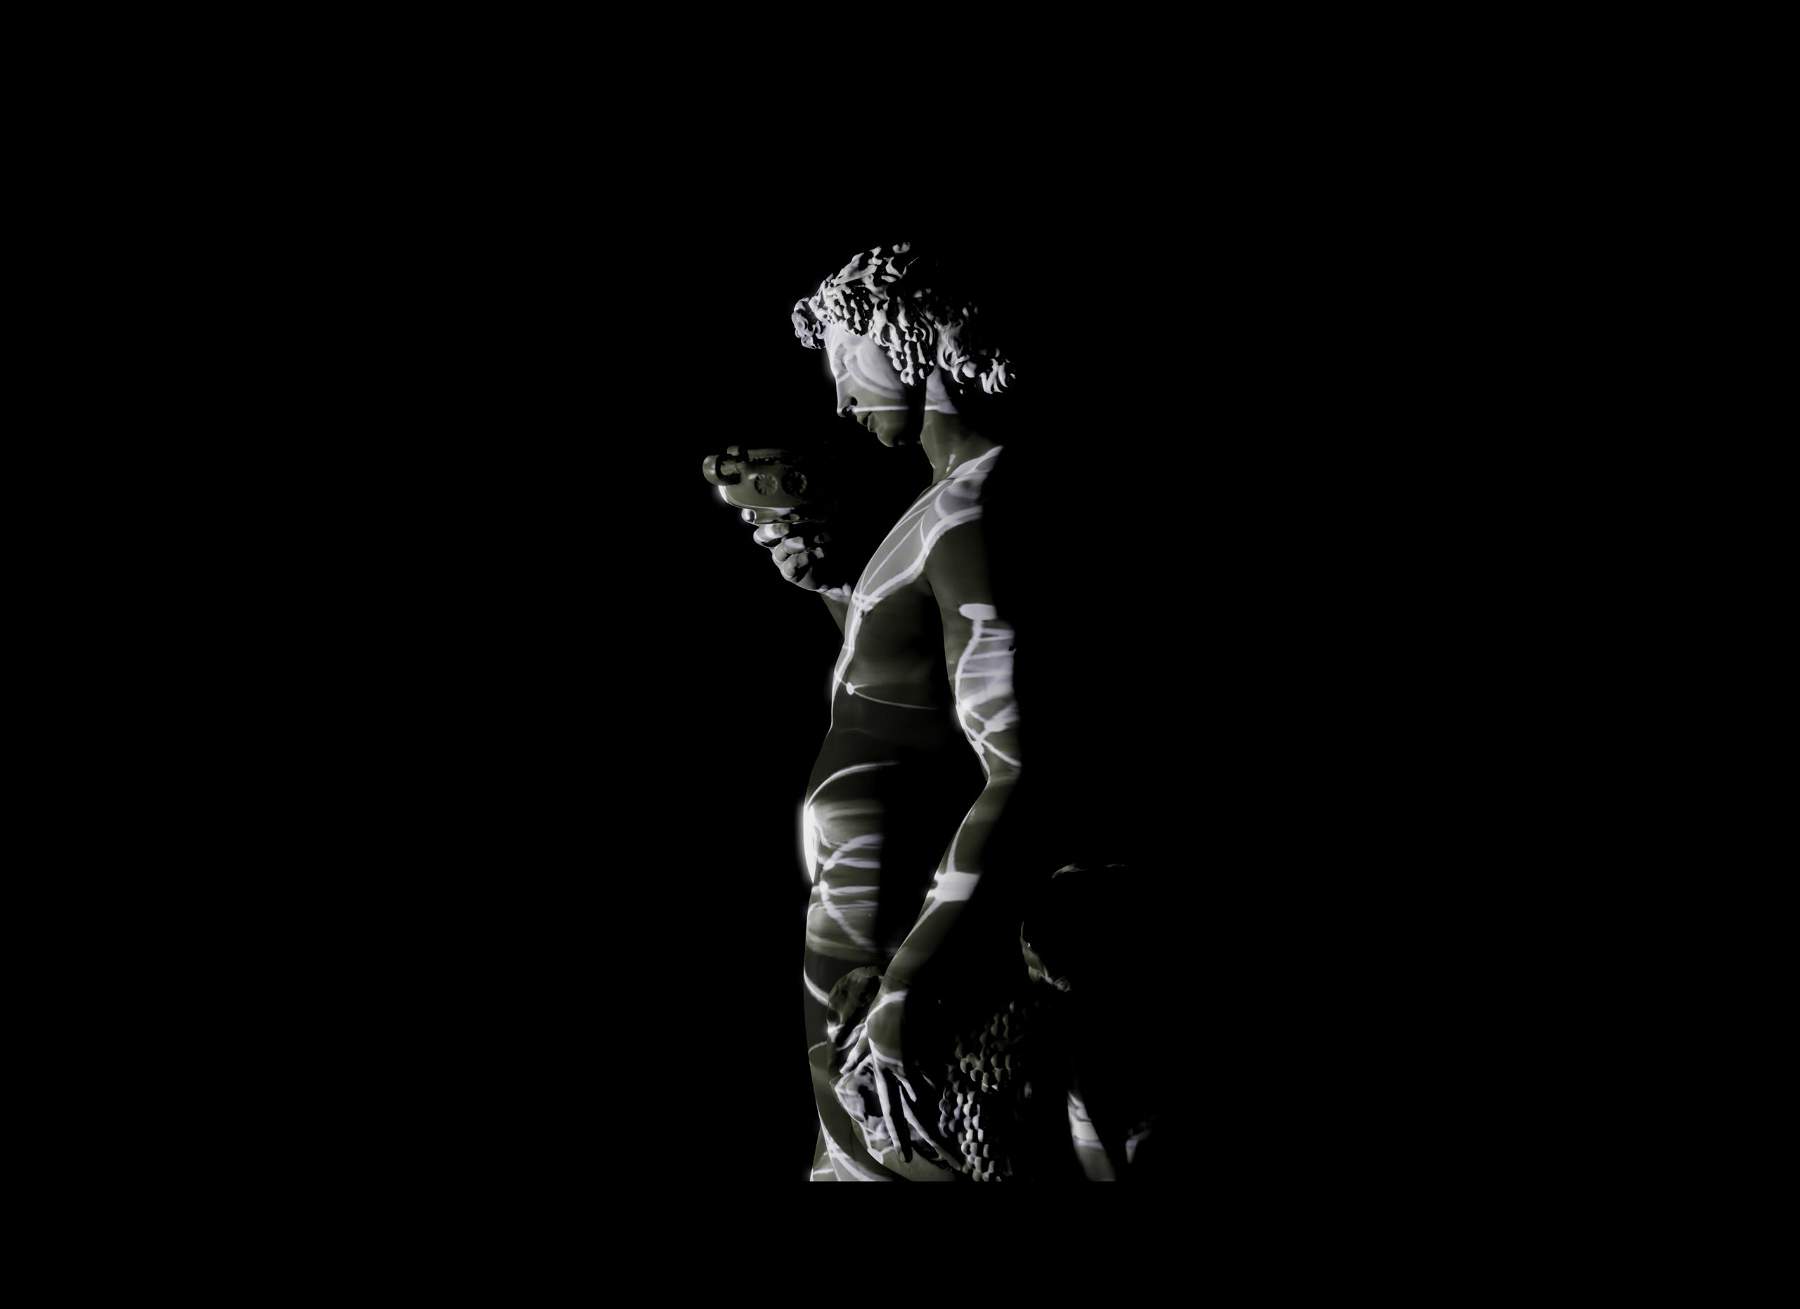 Michelangelo protagoniste d'une installation vidéo immersive à Pietrasanta